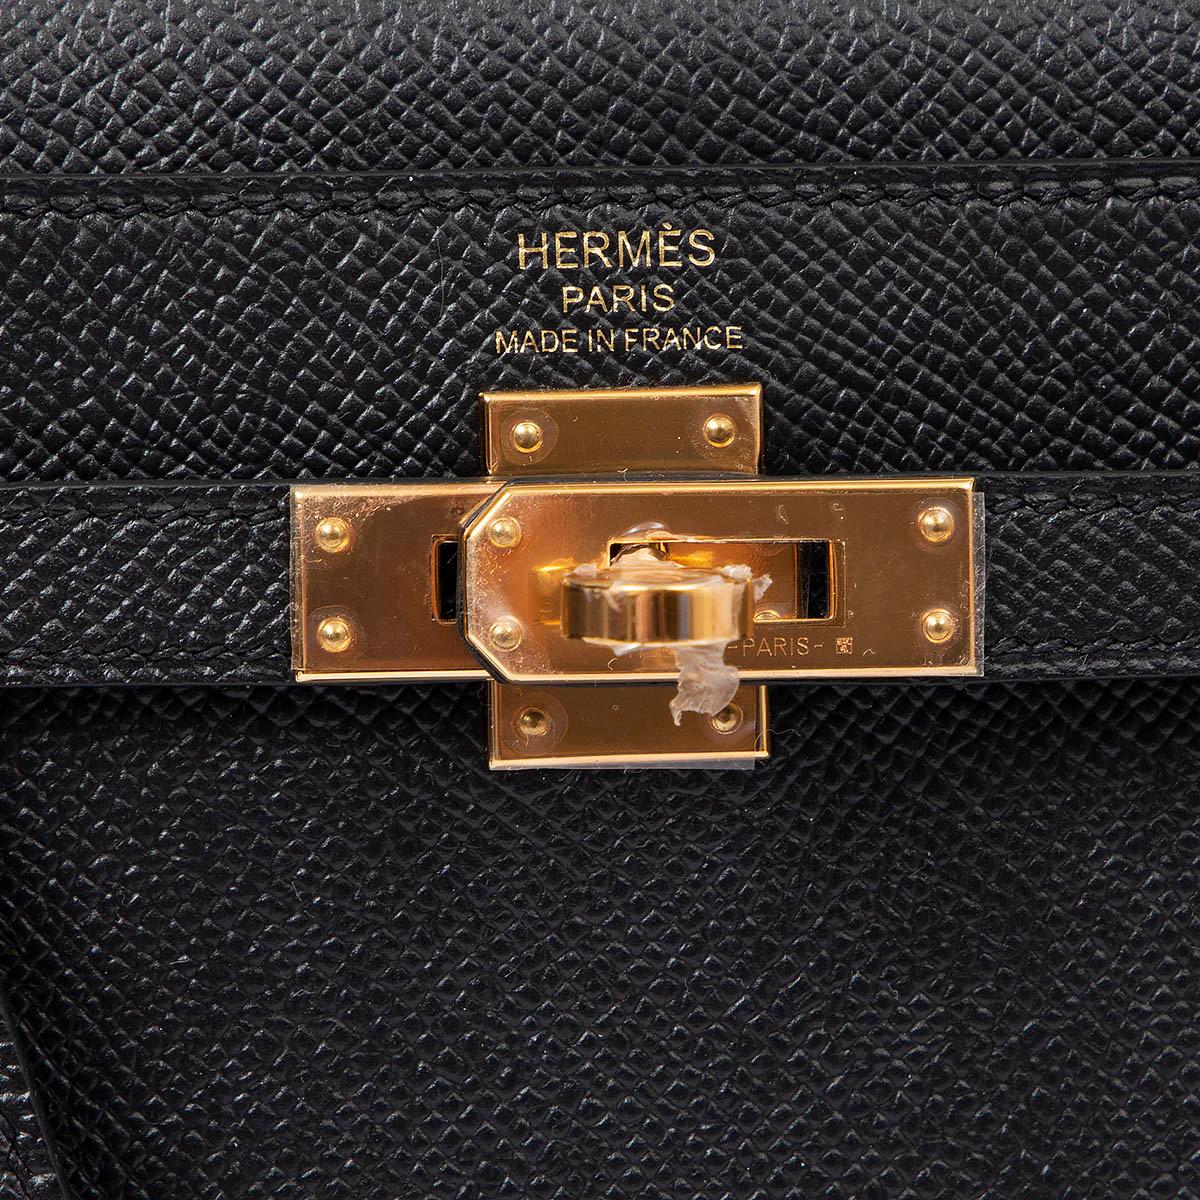 HERMES black Epsom leather KELLY 25 SELLIER Bag w Gold 3